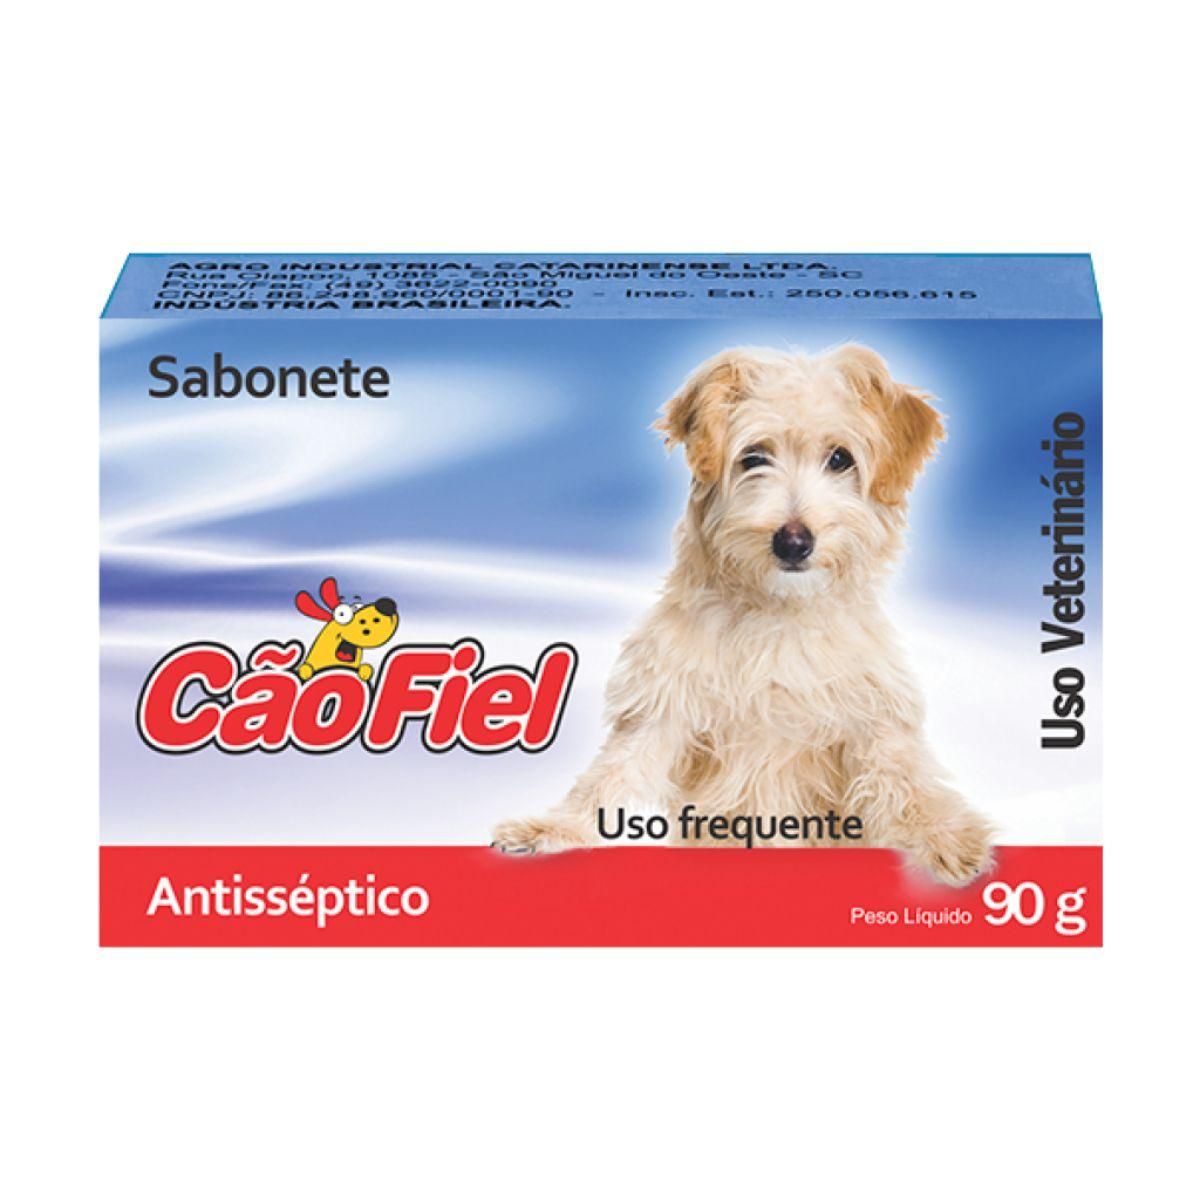 Sabonete Antisseptico e Bactericida Cão Fiel 90g